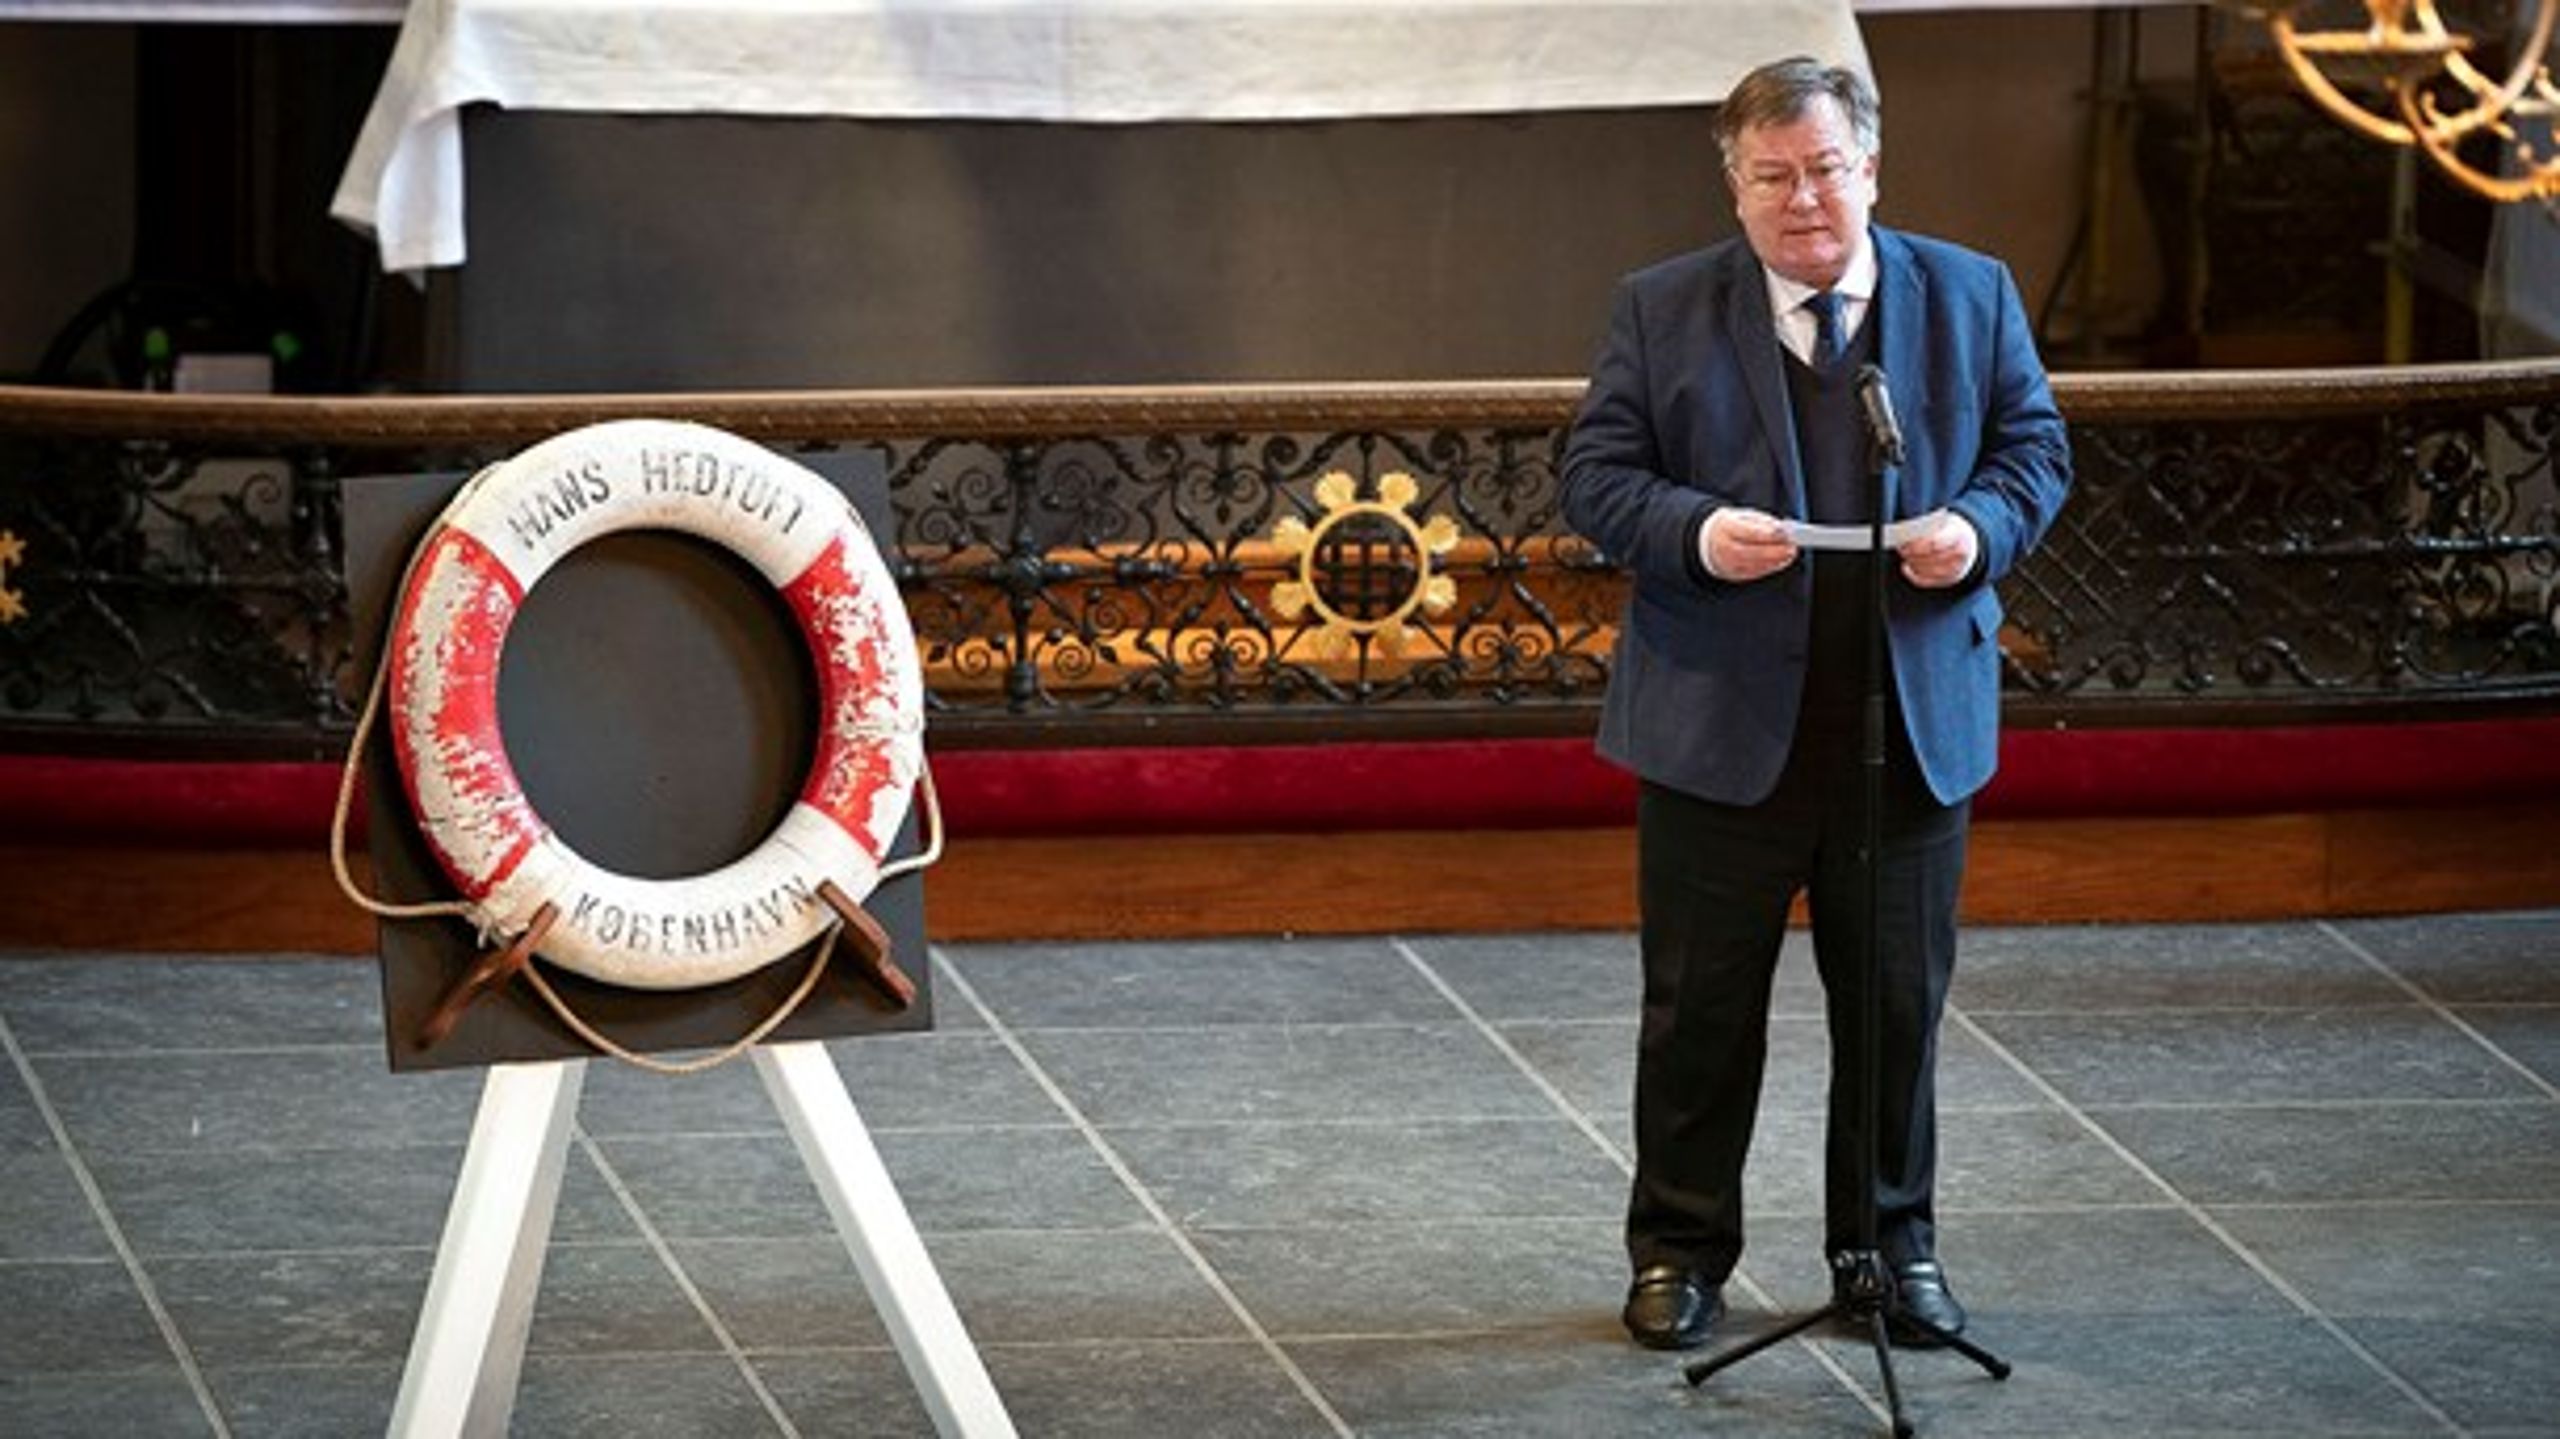 Forsvarsminister Claus Hjort Frederiksen talte i Holmens Kirke i København ved siden af den redningskrans fra Hans Hedtoft, som er det eneste spor efter skibet.